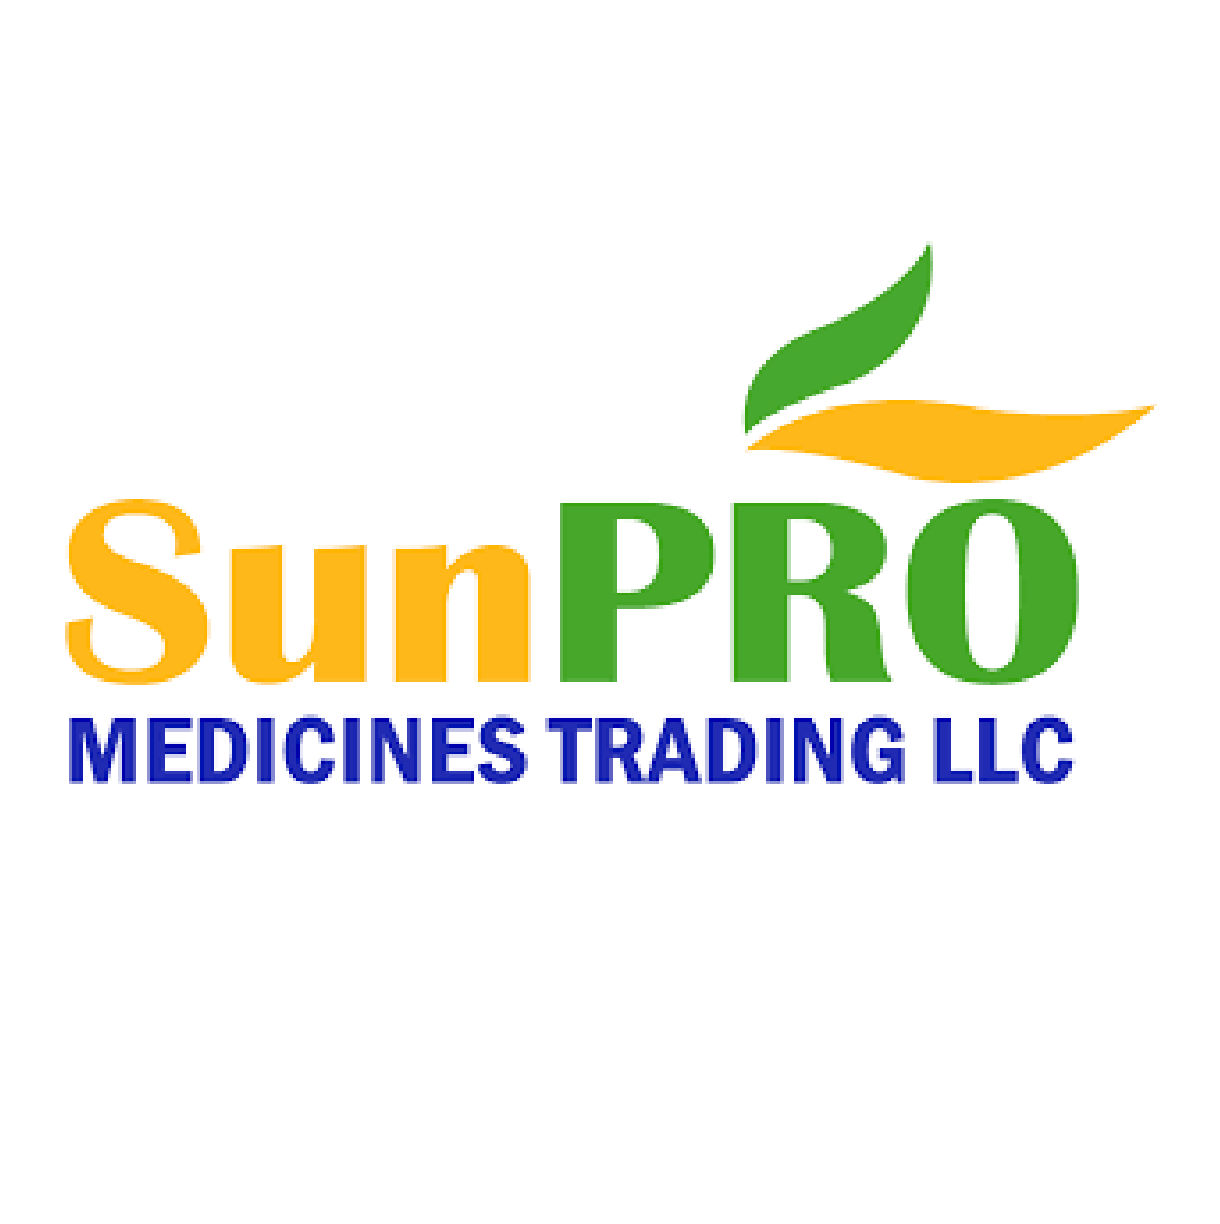 SUNORO Trading LLC